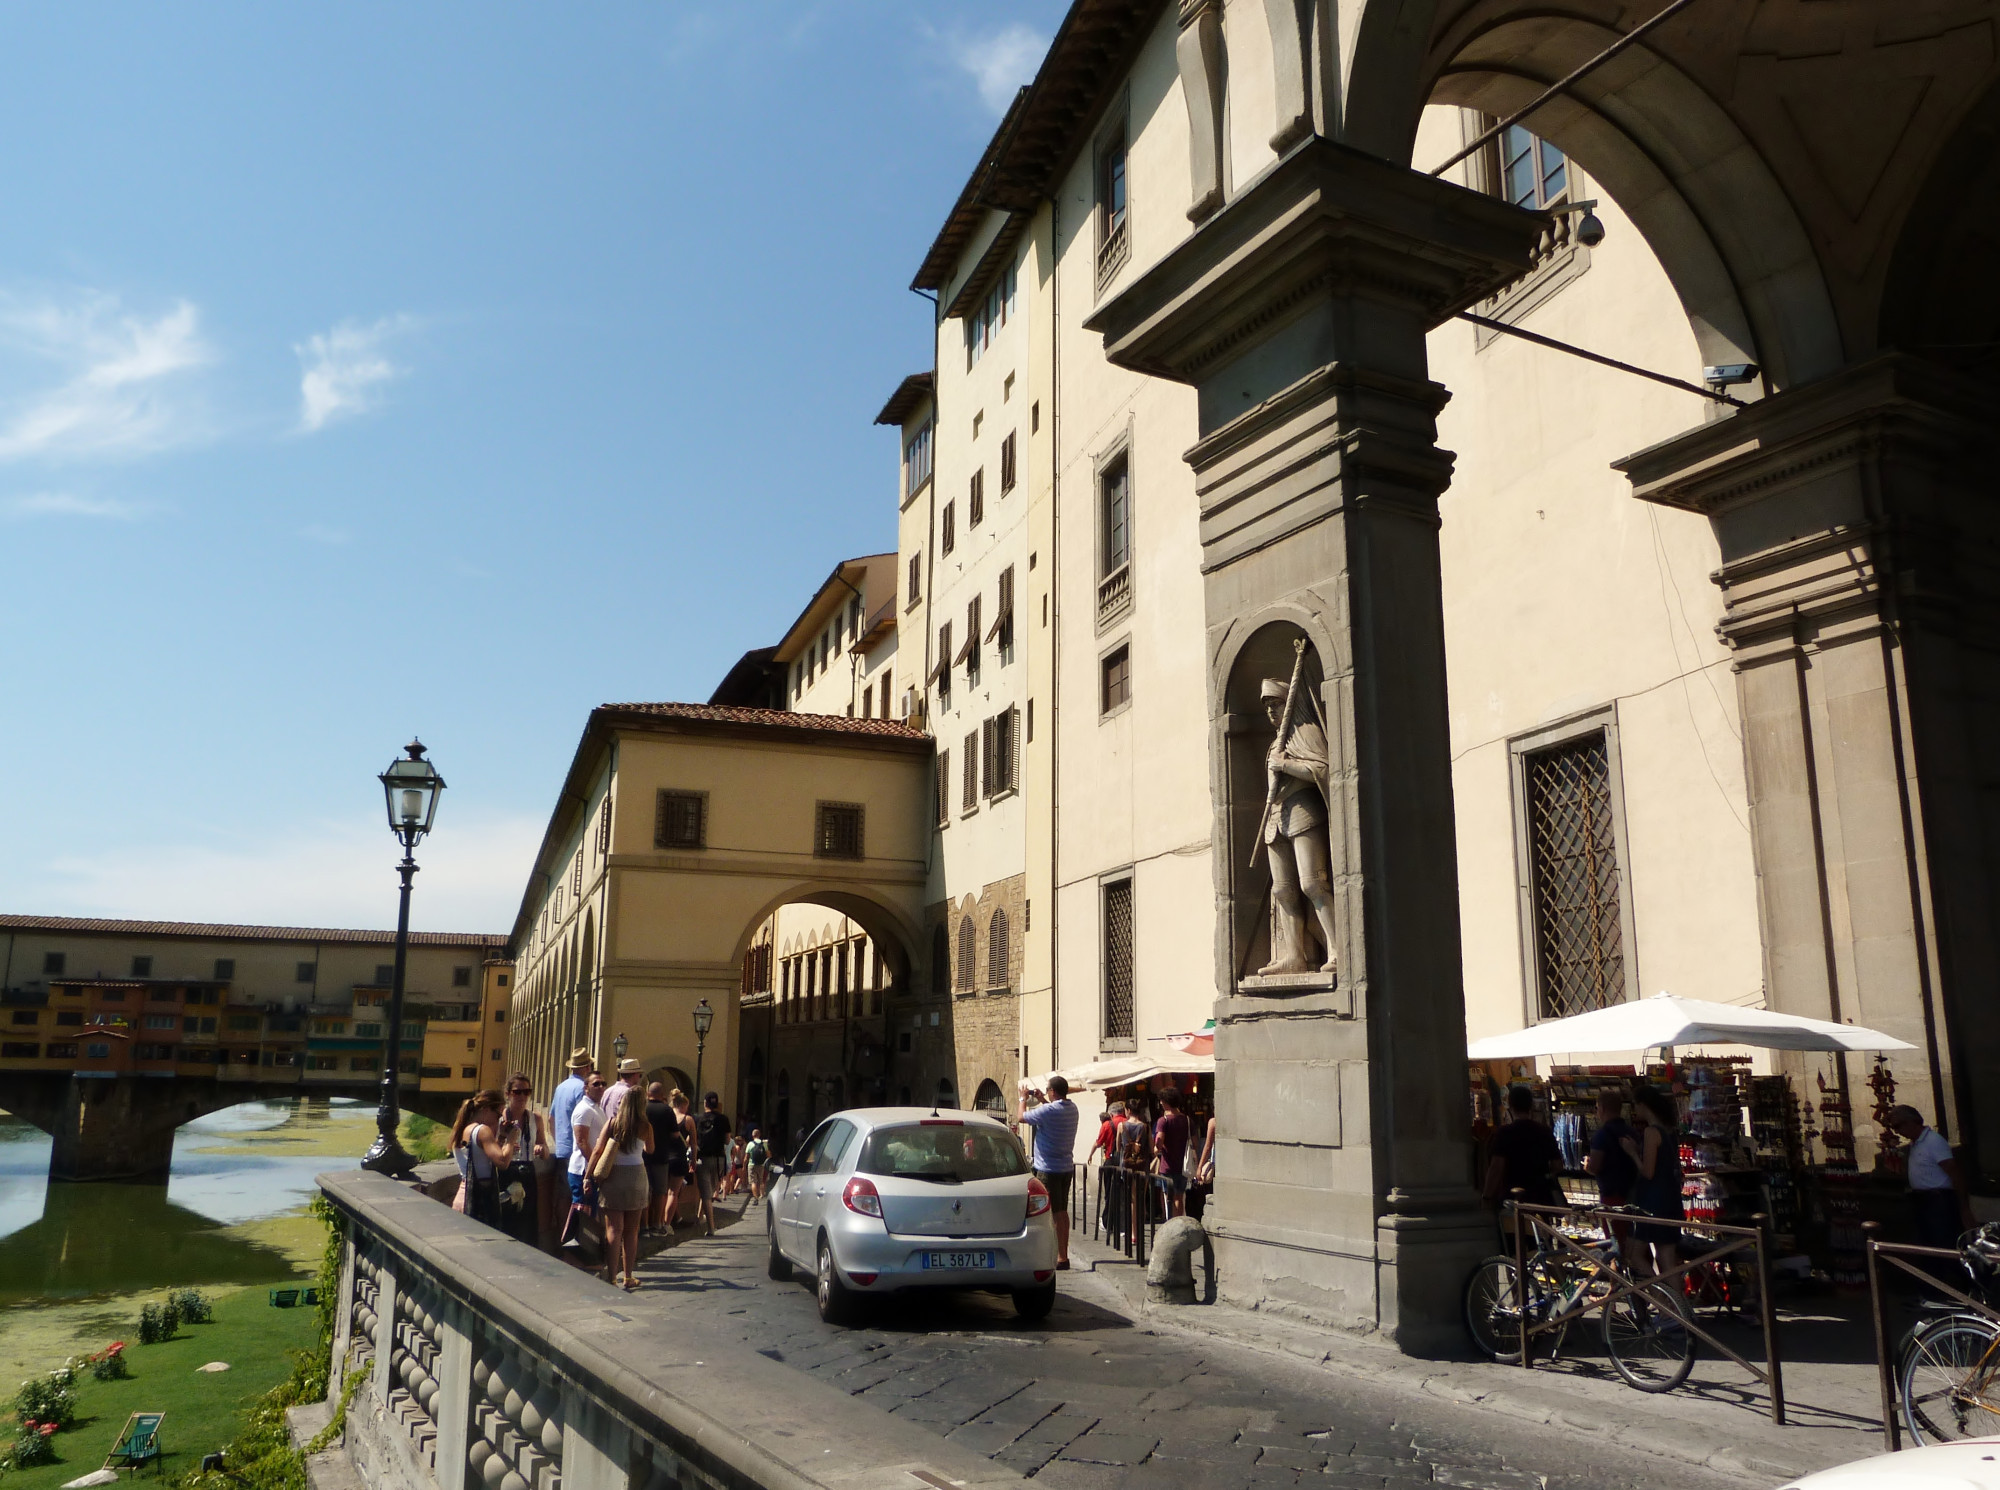 Vasari Corridor Museum